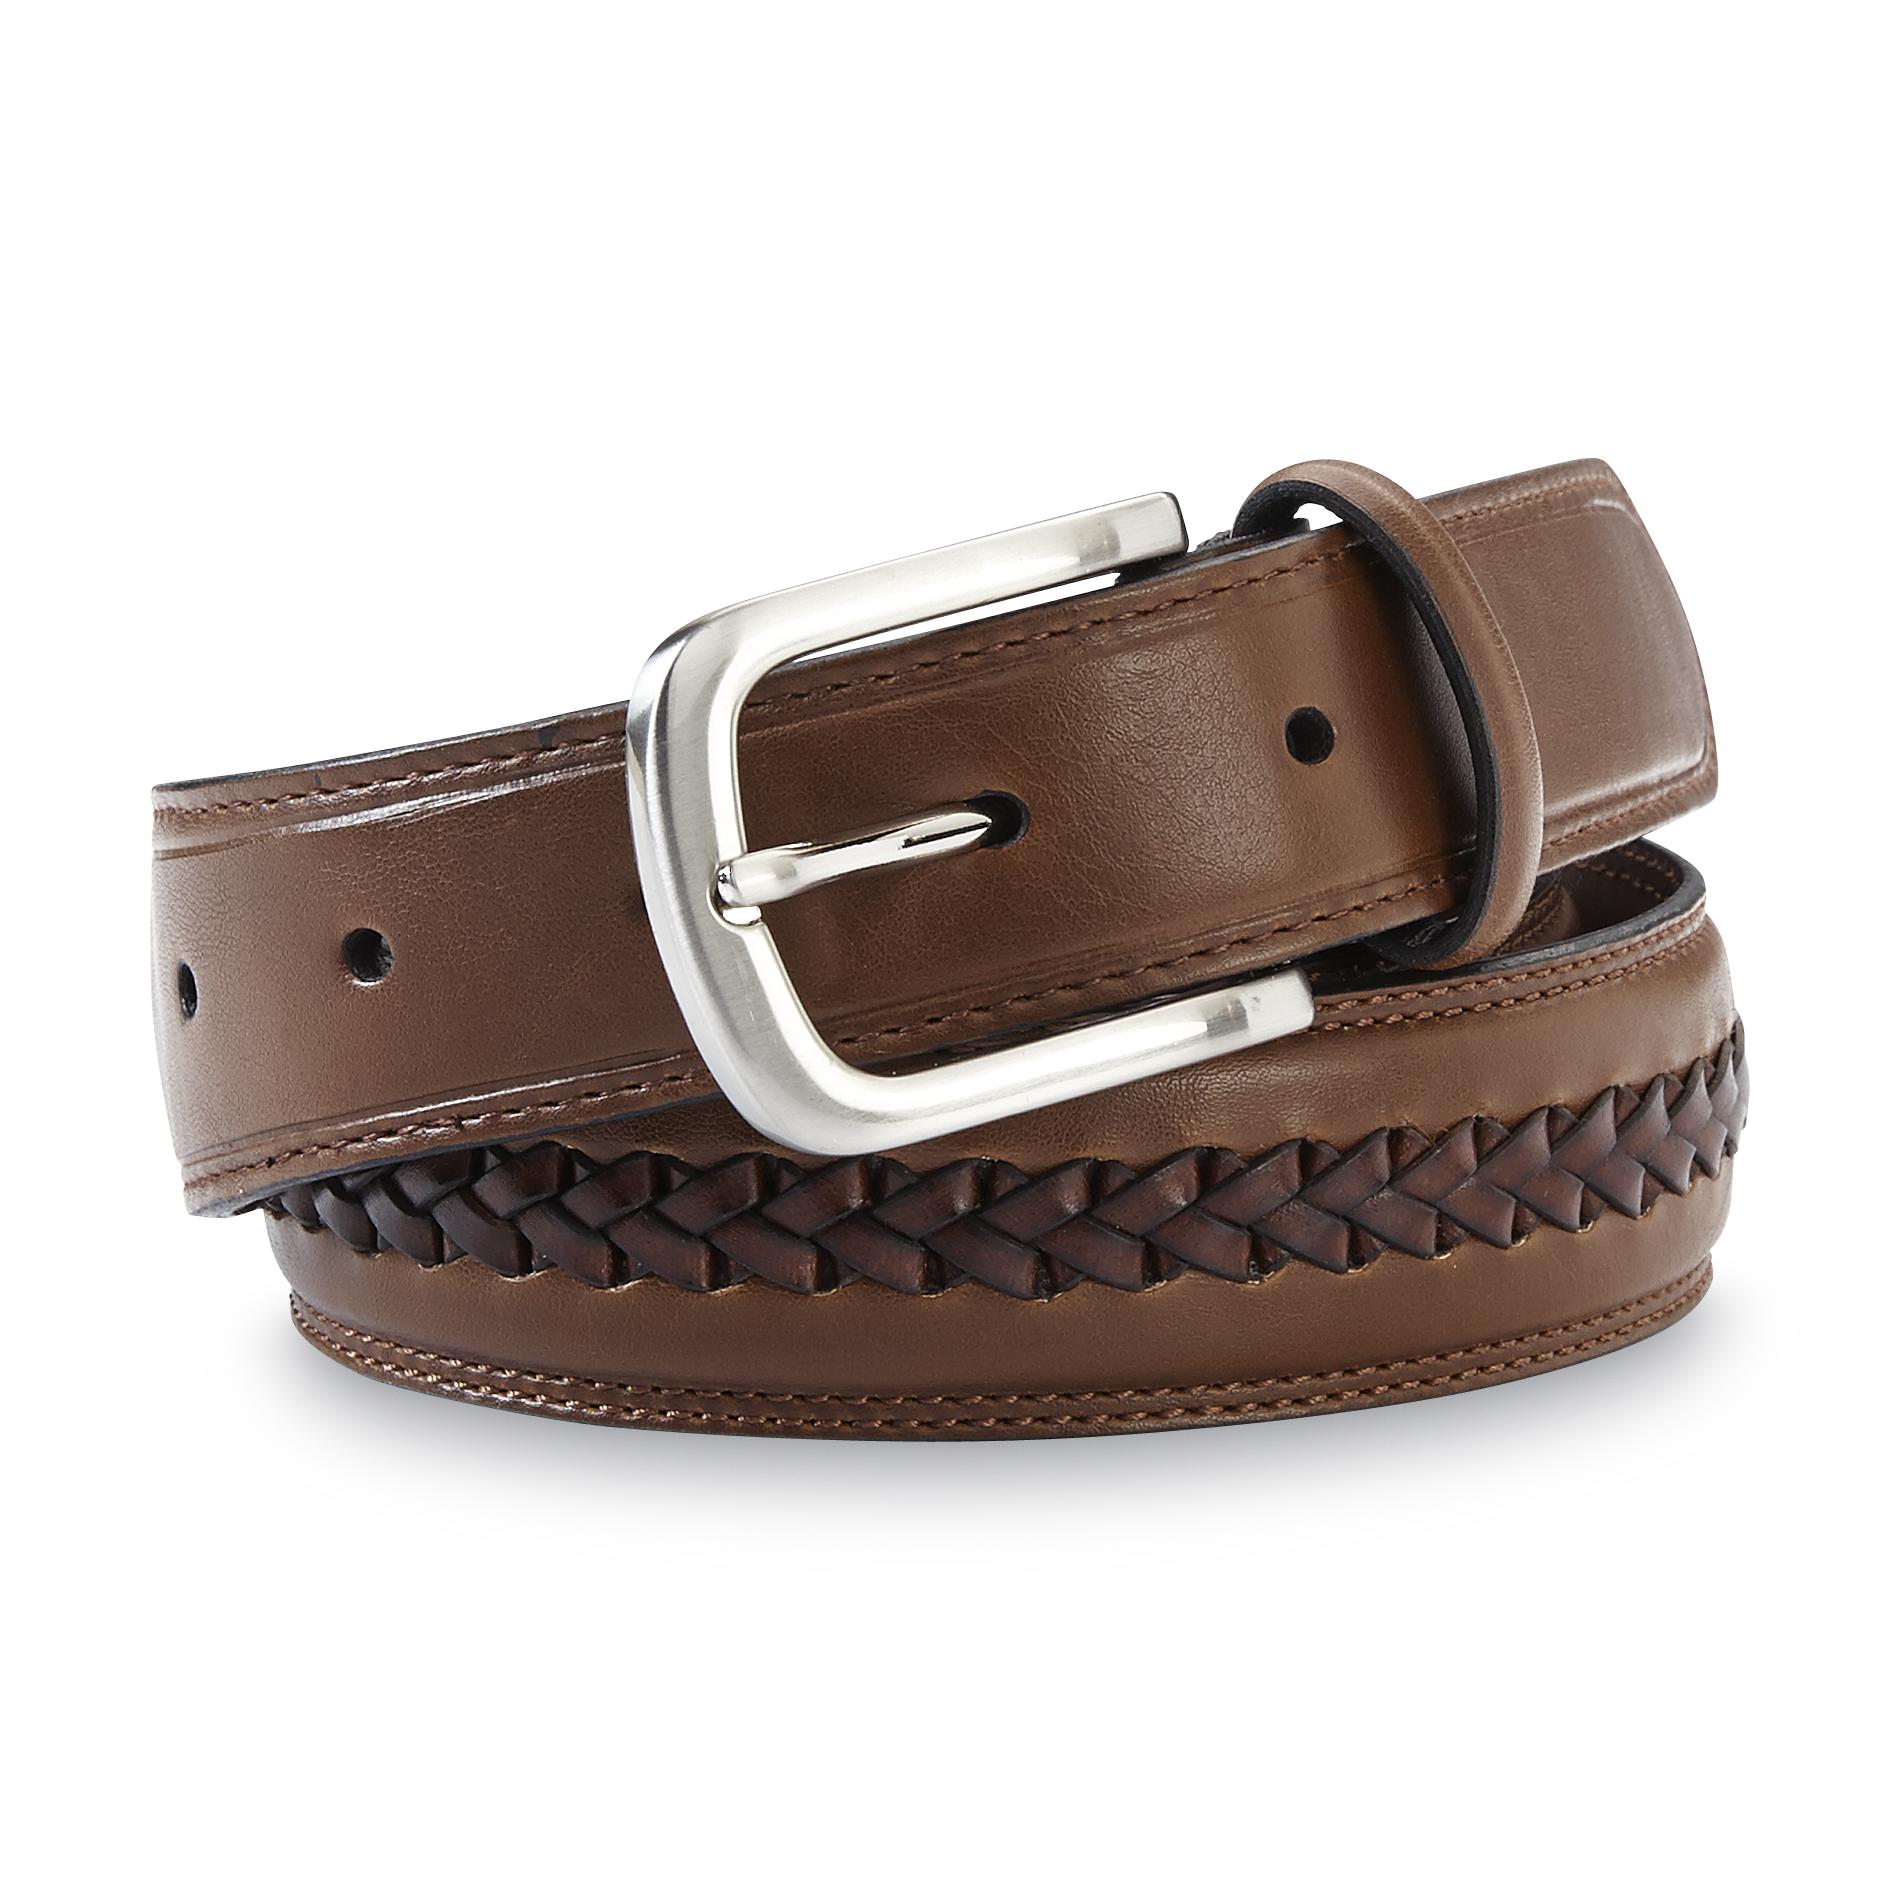 Covington Men's Synthetic Leather Belt